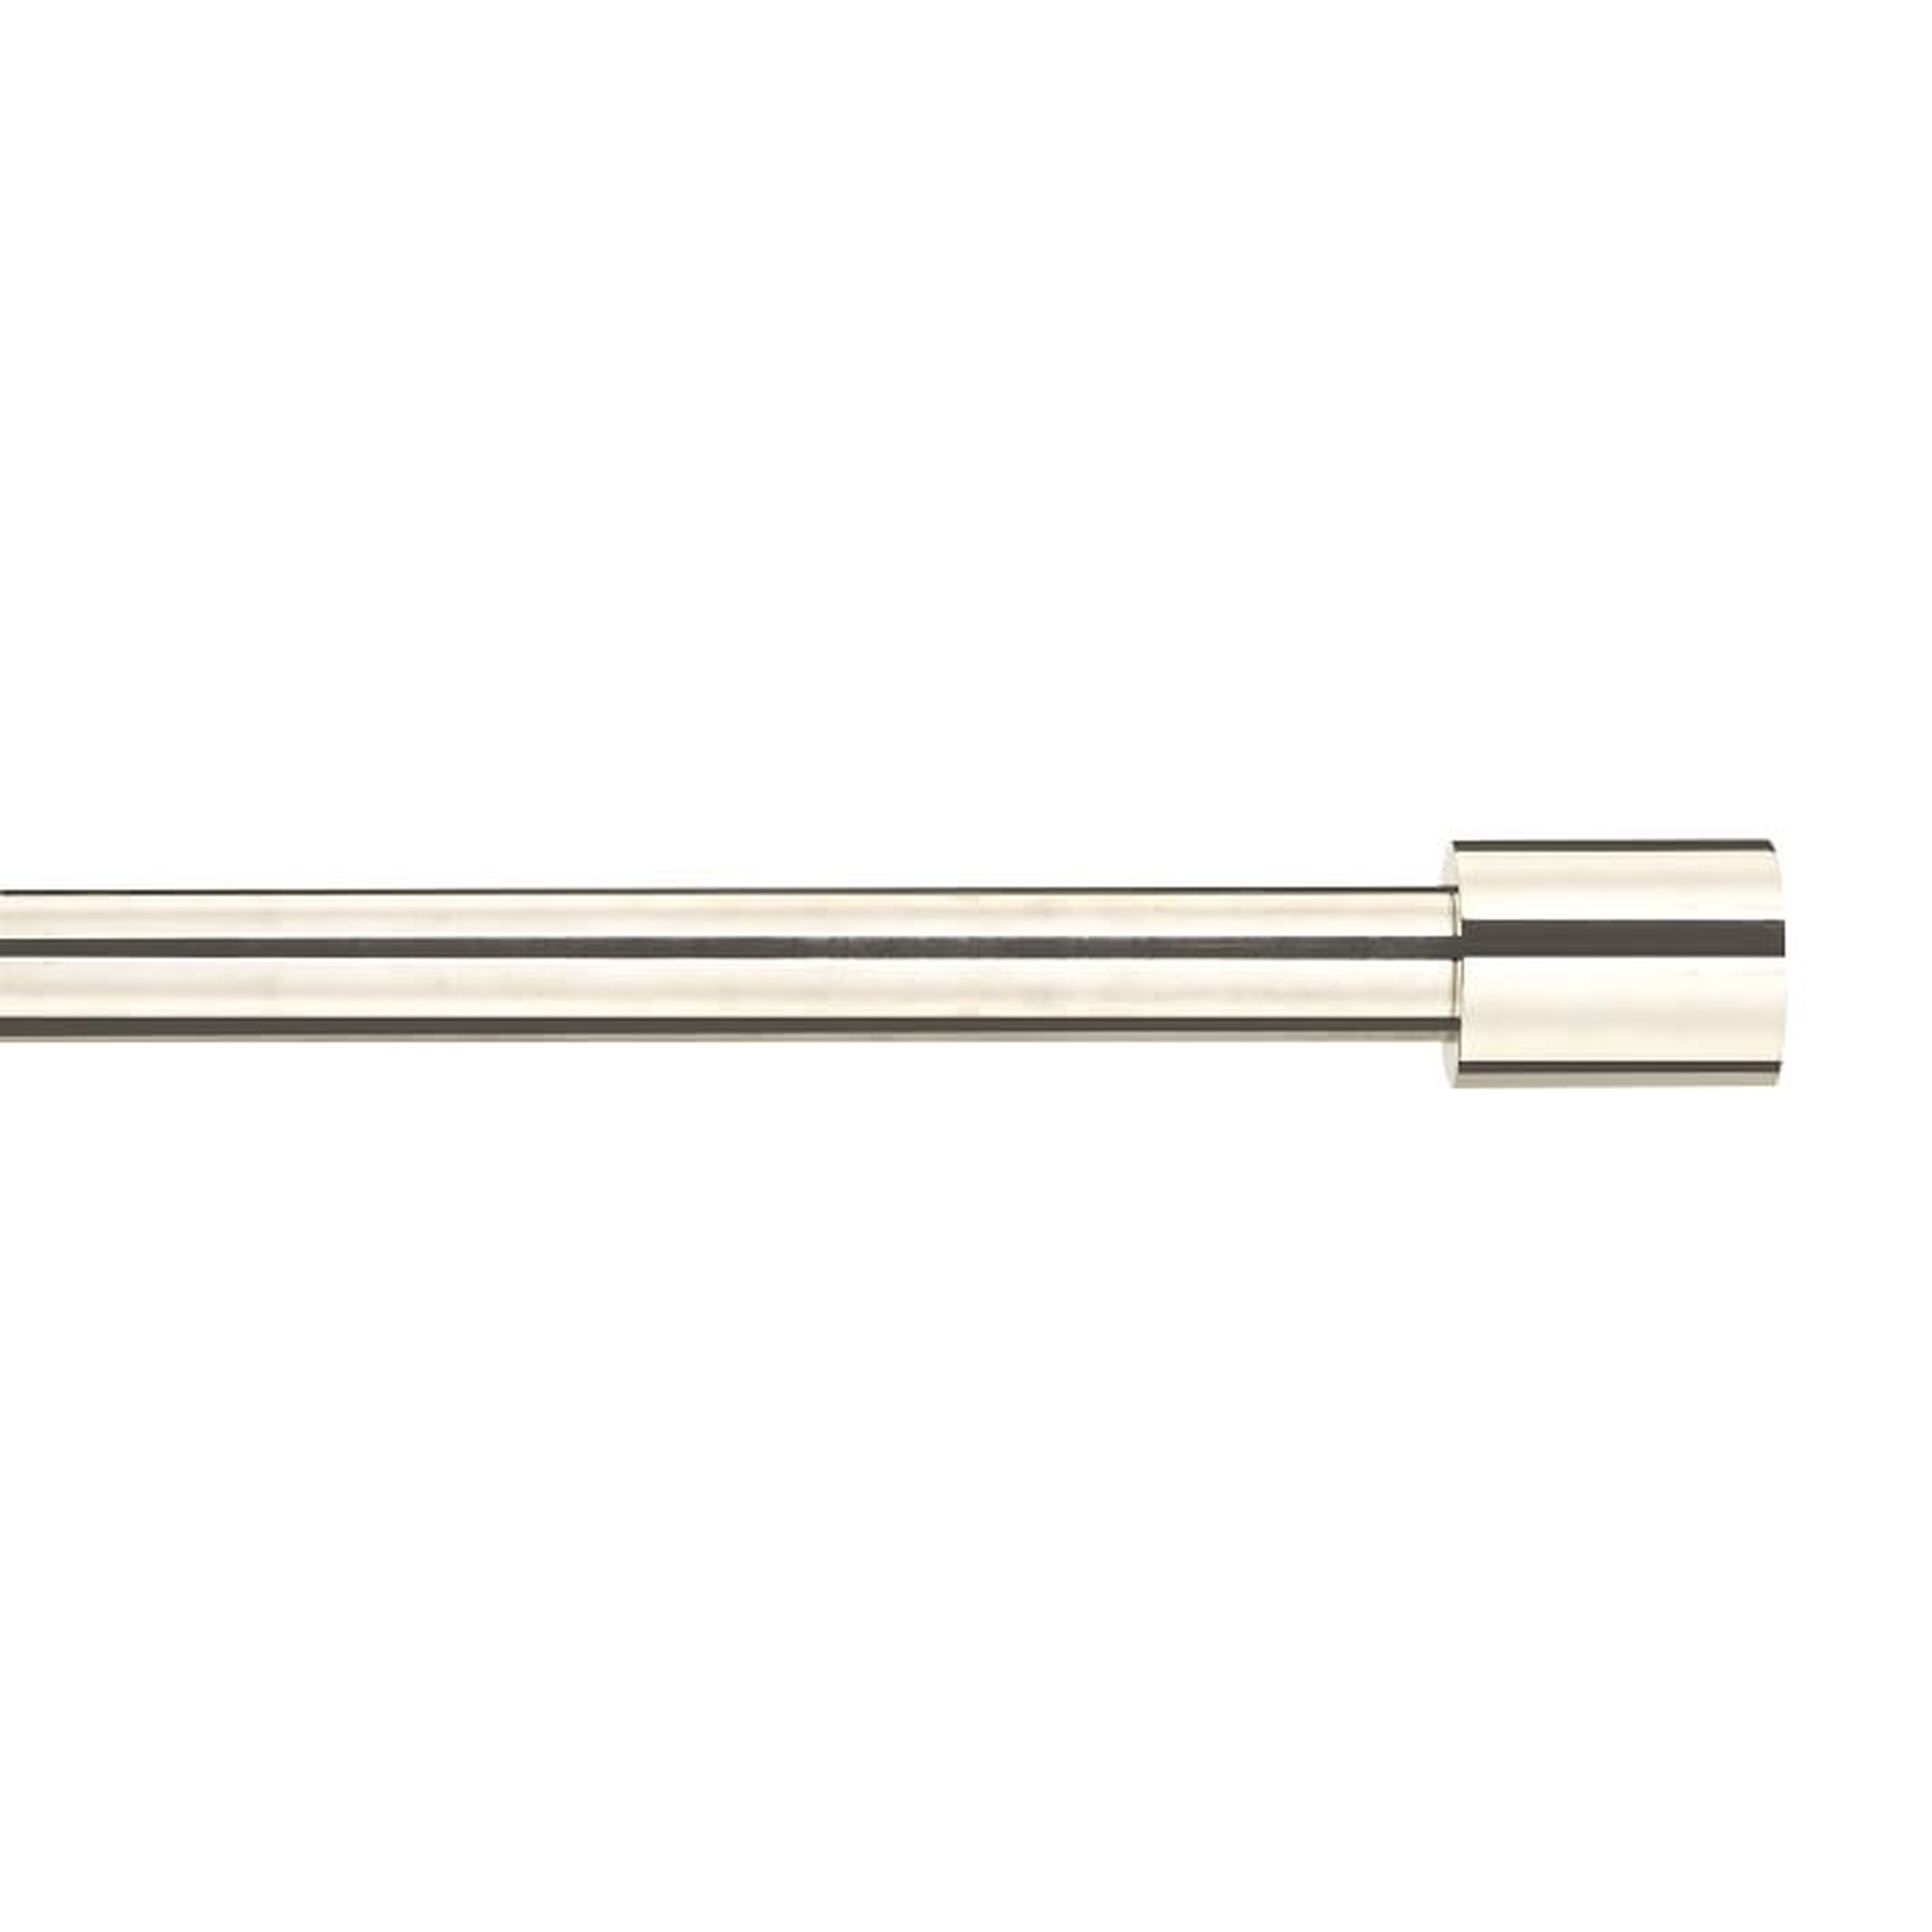 Oversized Adjustable Metal Rod - Polished Nickel - 108" - 144" - West Elm